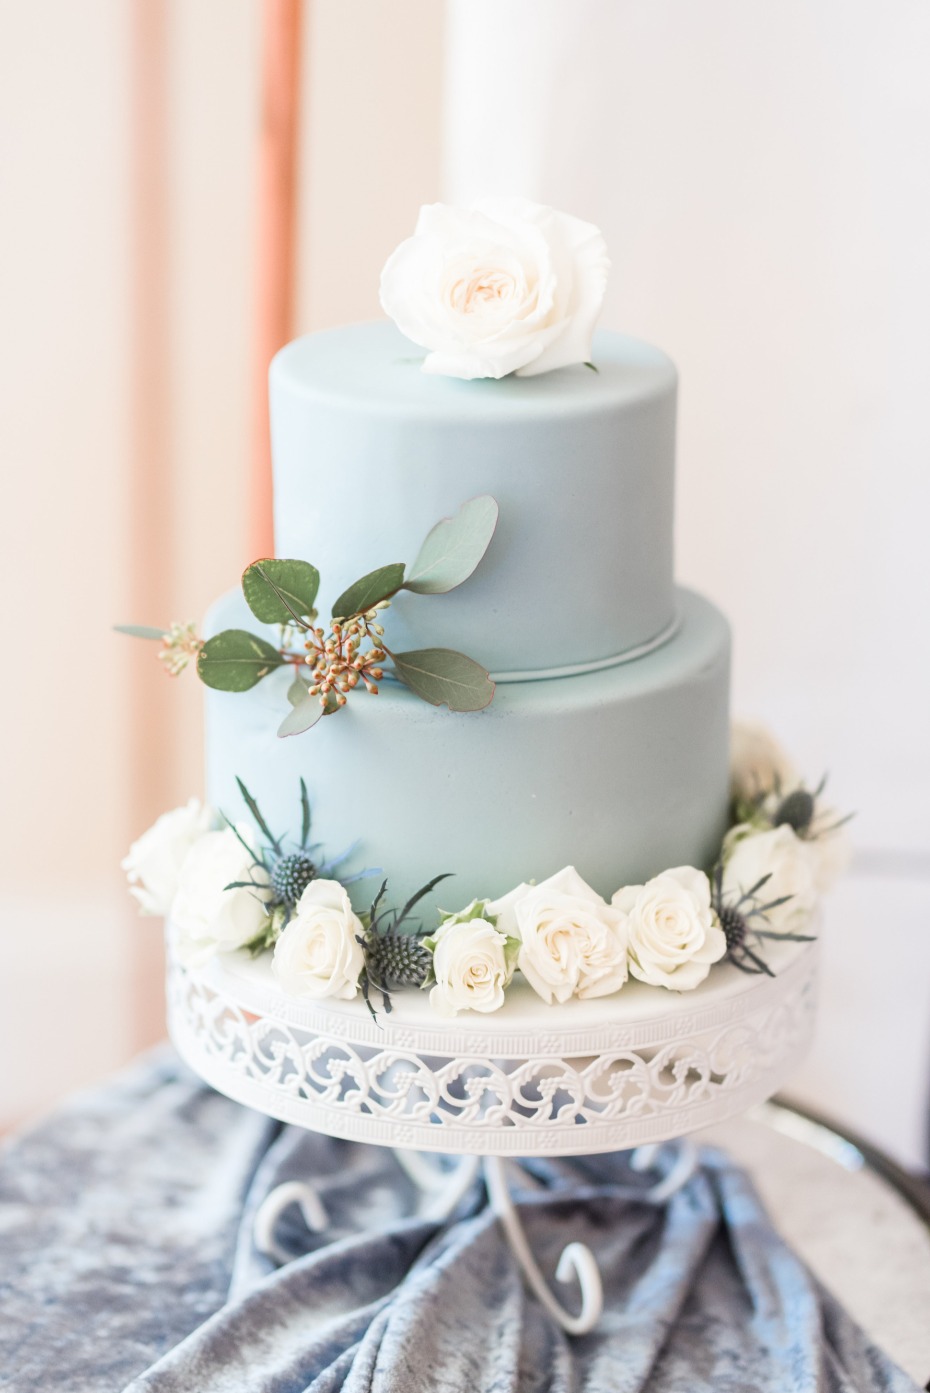 Something blue wedding cake with white roses